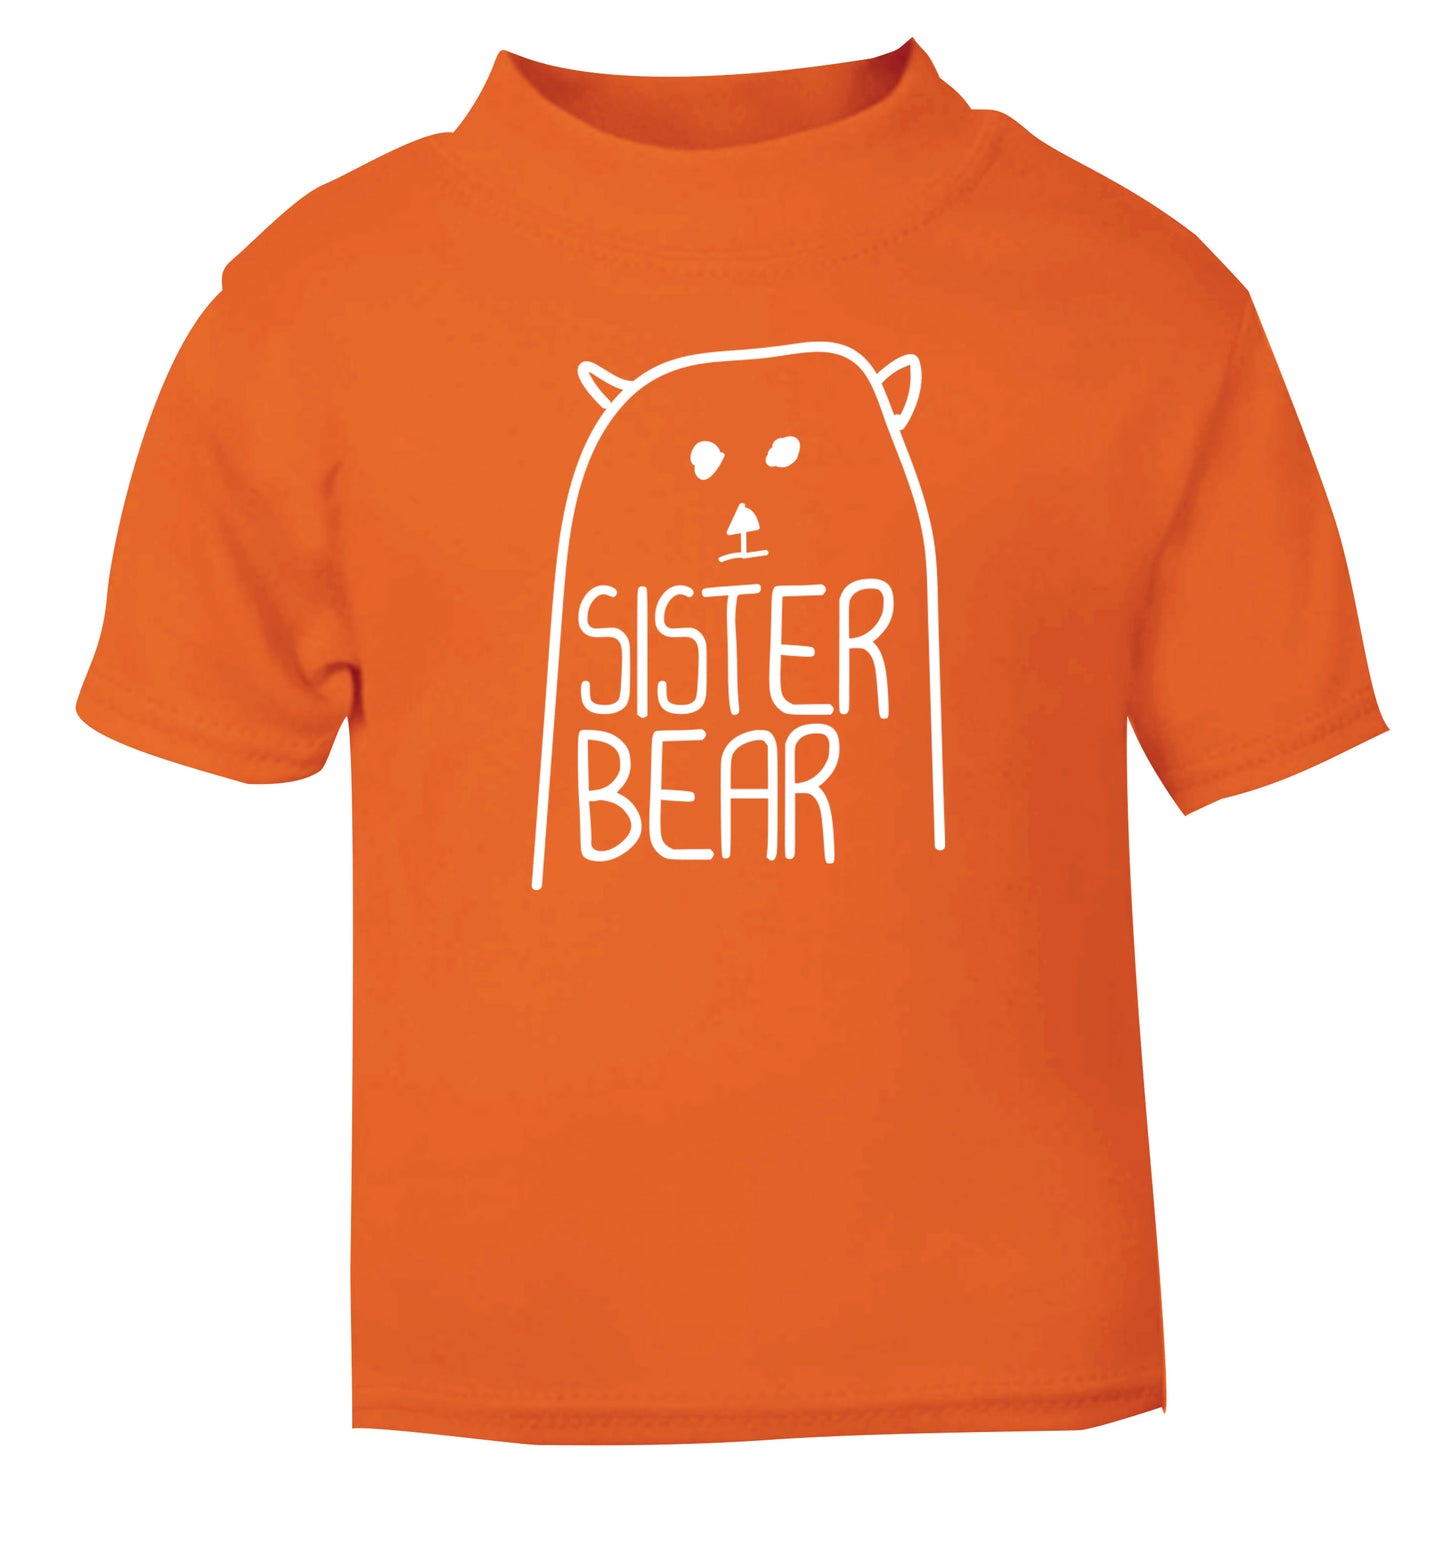 Sister bear orange Baby Toddler Tshirt 2 Years